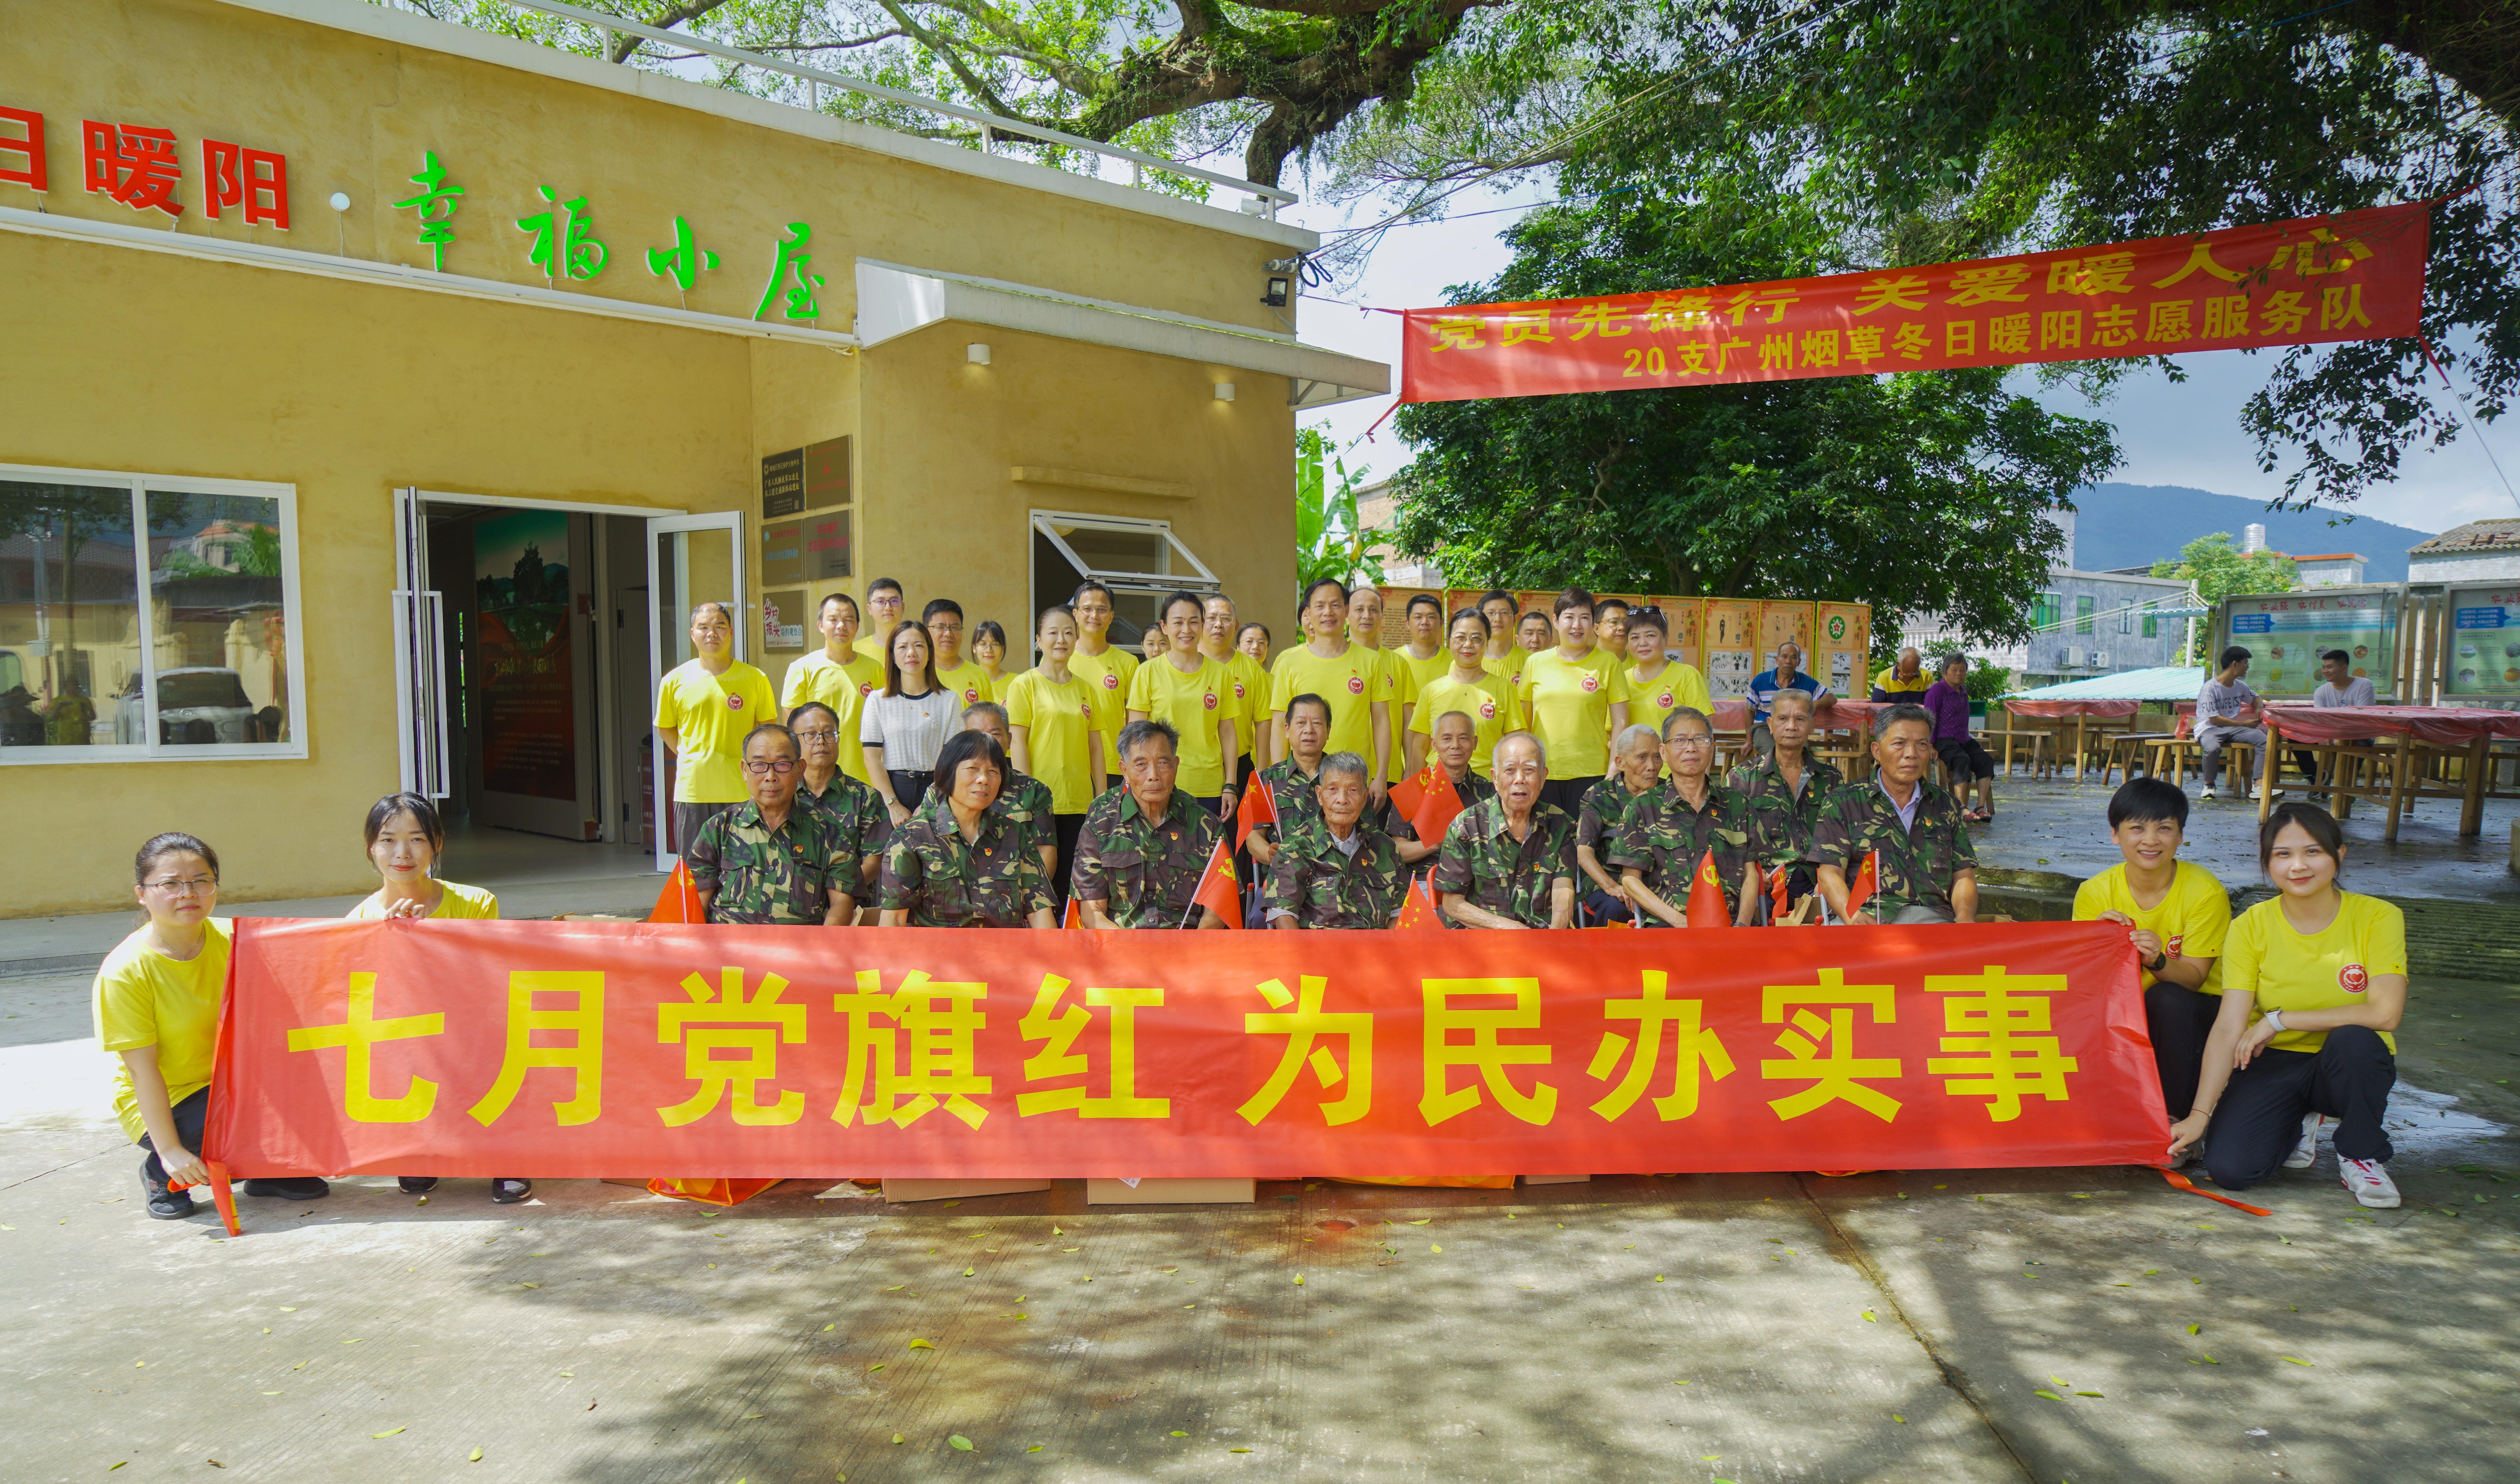 广州烟草冬日暖阳志愿服务队志愿者和七境村老党员合影